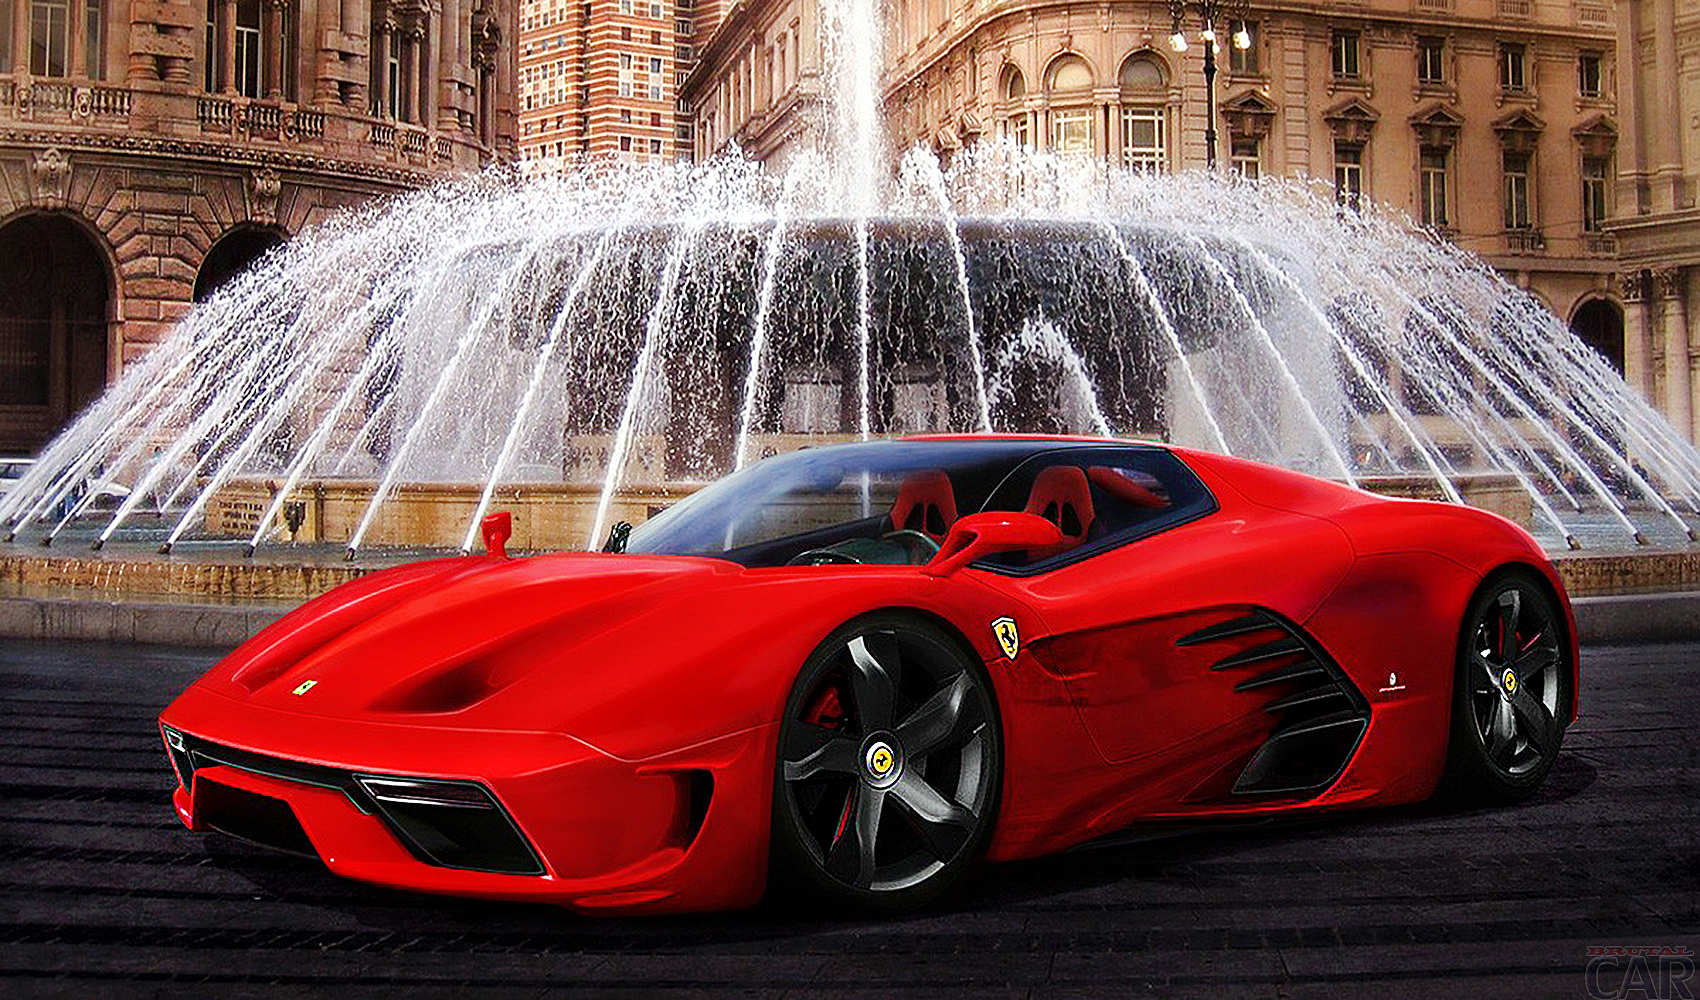 Ferrari Testarossa Wallpaper The Best Photos Of Expensive